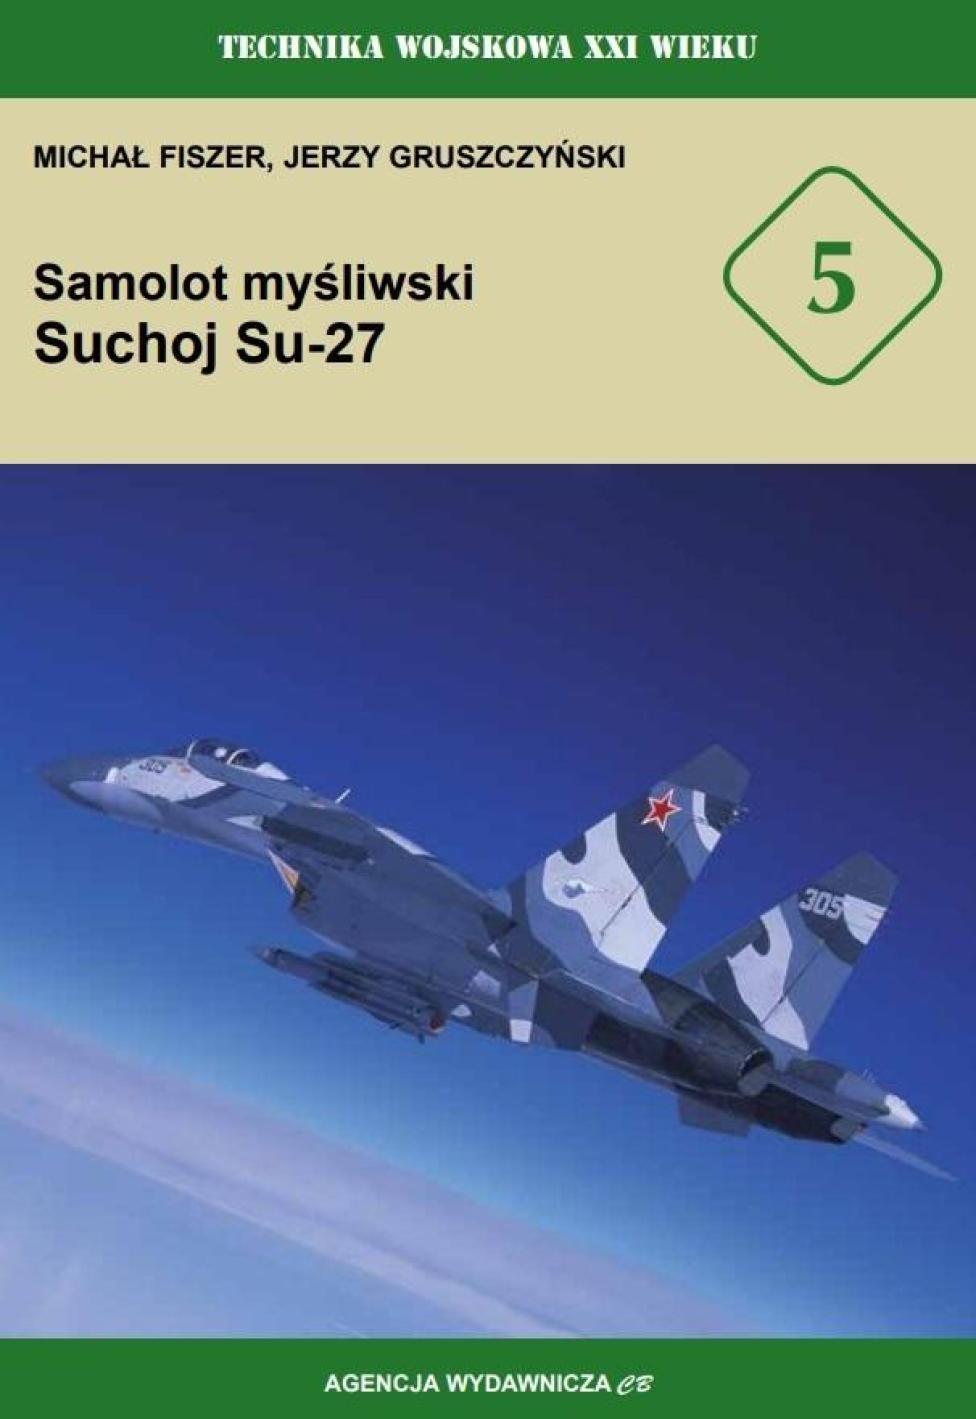 Samolot myśliwski Suchoj Su-27 (fot. Agencja Wydawnicza CB)